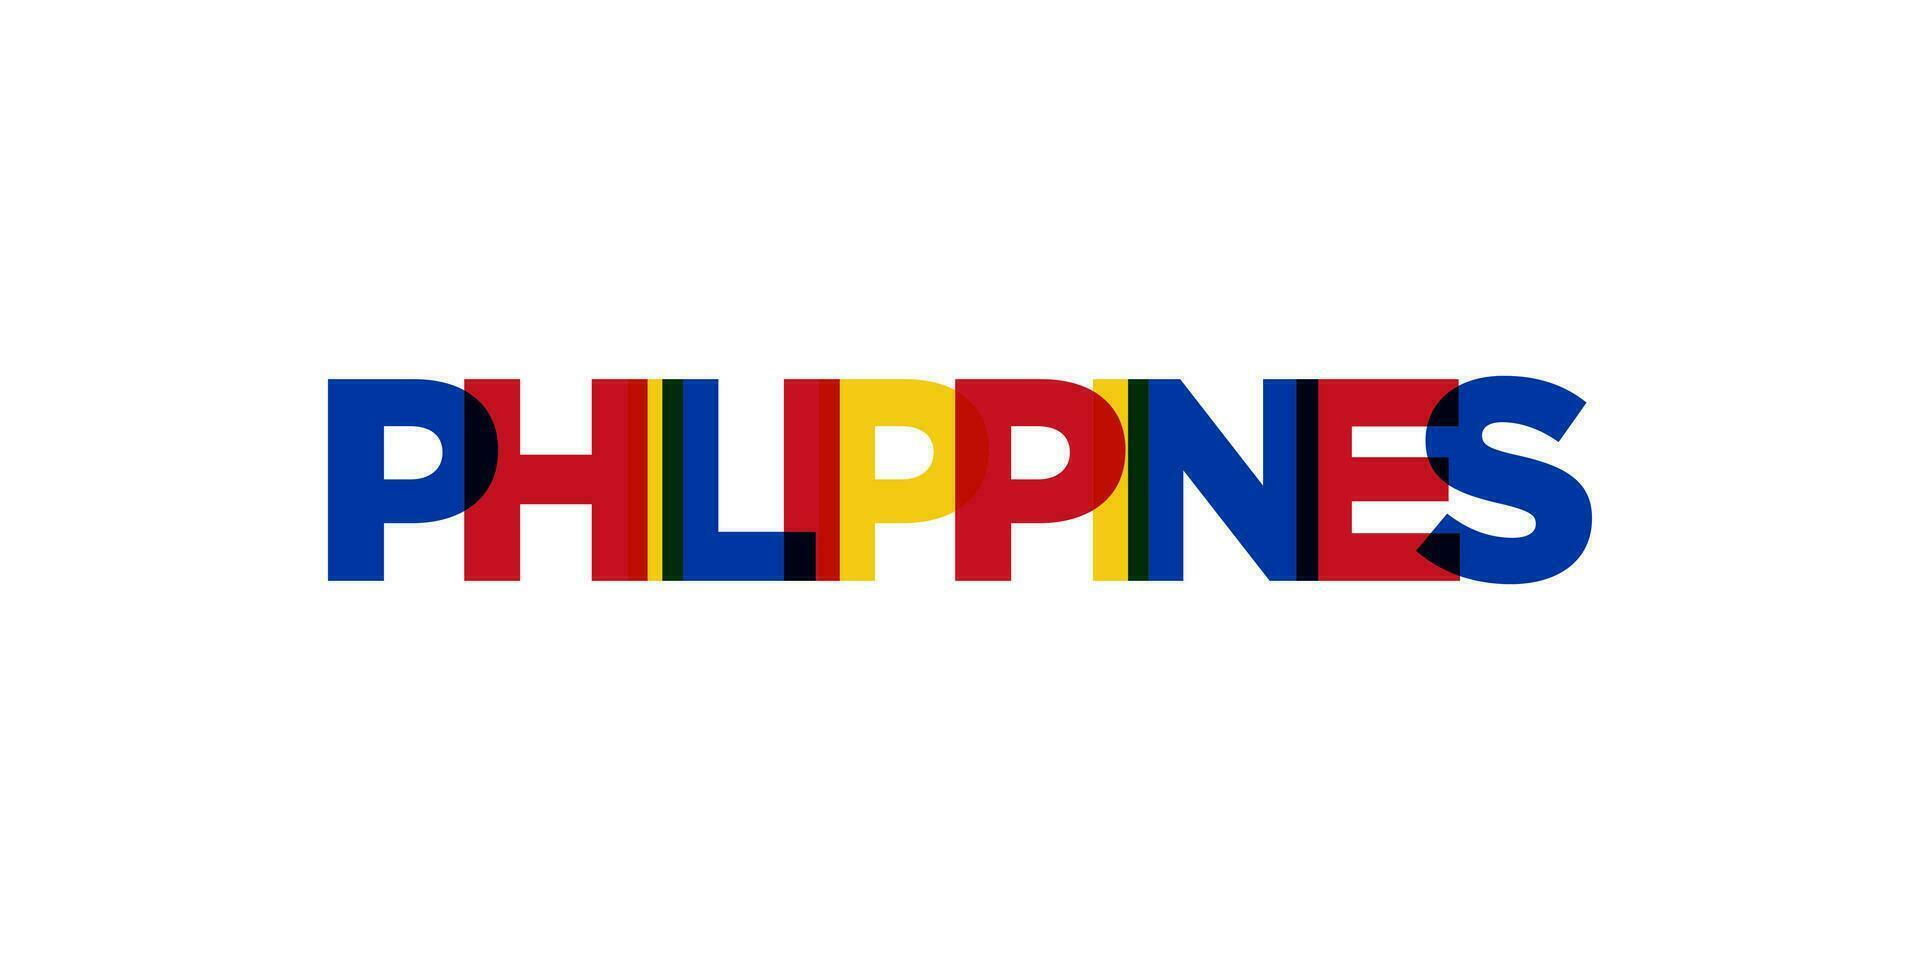 Philippinen Emblem. das Design Eigenschaften ein geometrisch Stil, Vektor Illustration mit Fett gedruckt Typografie im ein modern Schriftart. das Grafik Slogan Beschriftung.